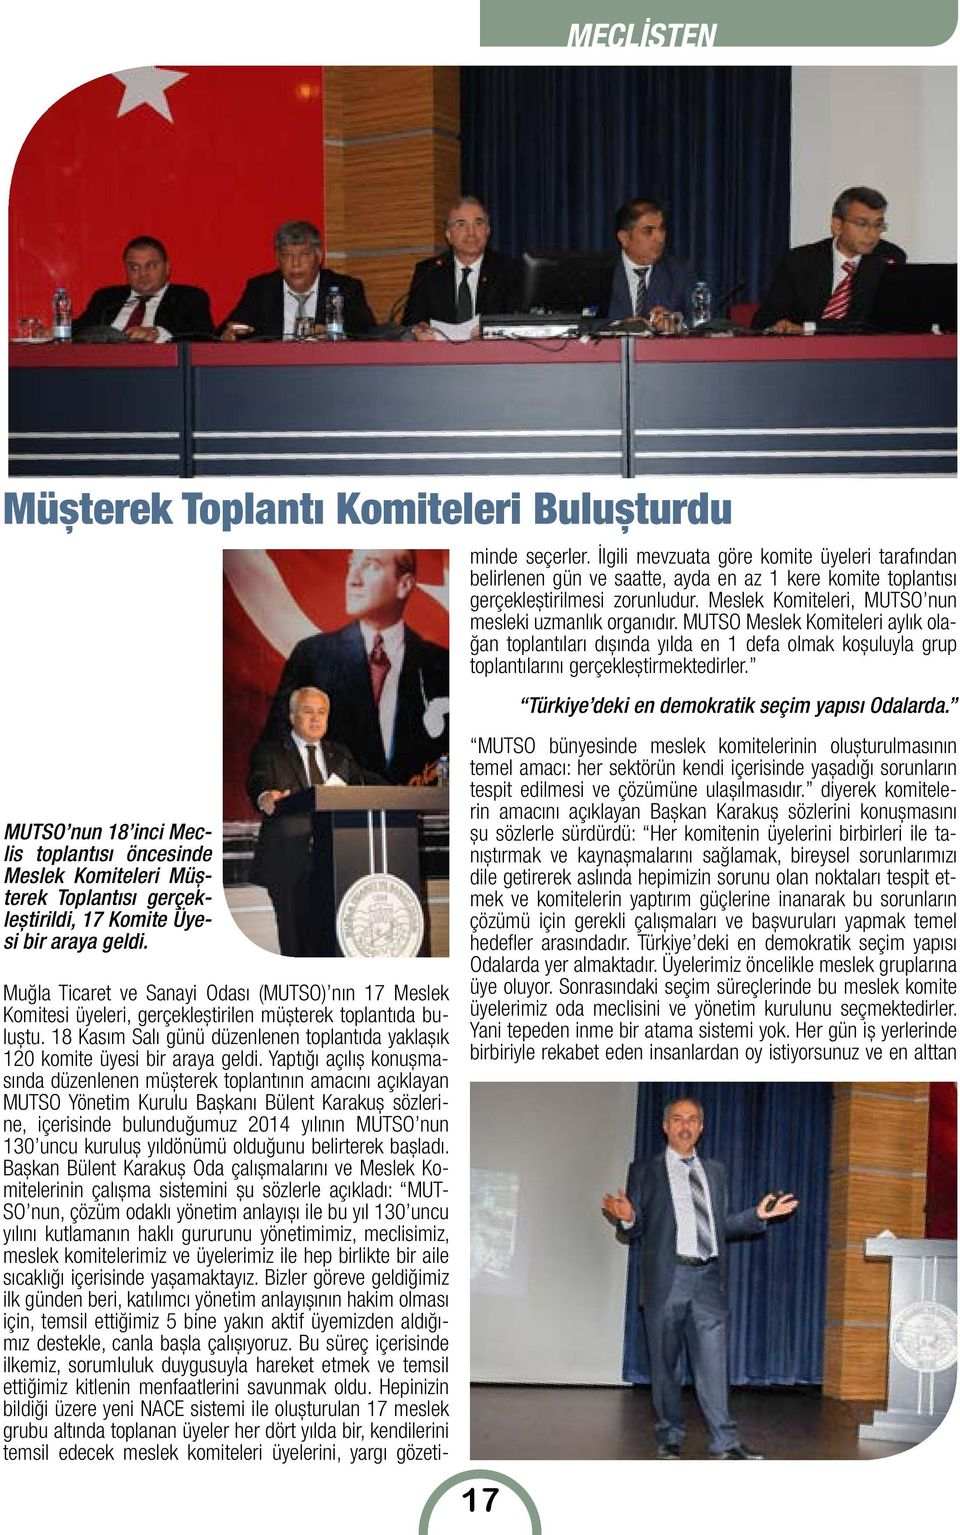 Yaptığı açılış konuşmasında düzenlenen müşterek toplantının amacını açıklayan MUTSO Yönetim Kurulu Başkanı Bülent Karakuş sözlerine, içerisinde bulunduğumuz 2014 yılının MUTSO nun 130 uncu kuruluş